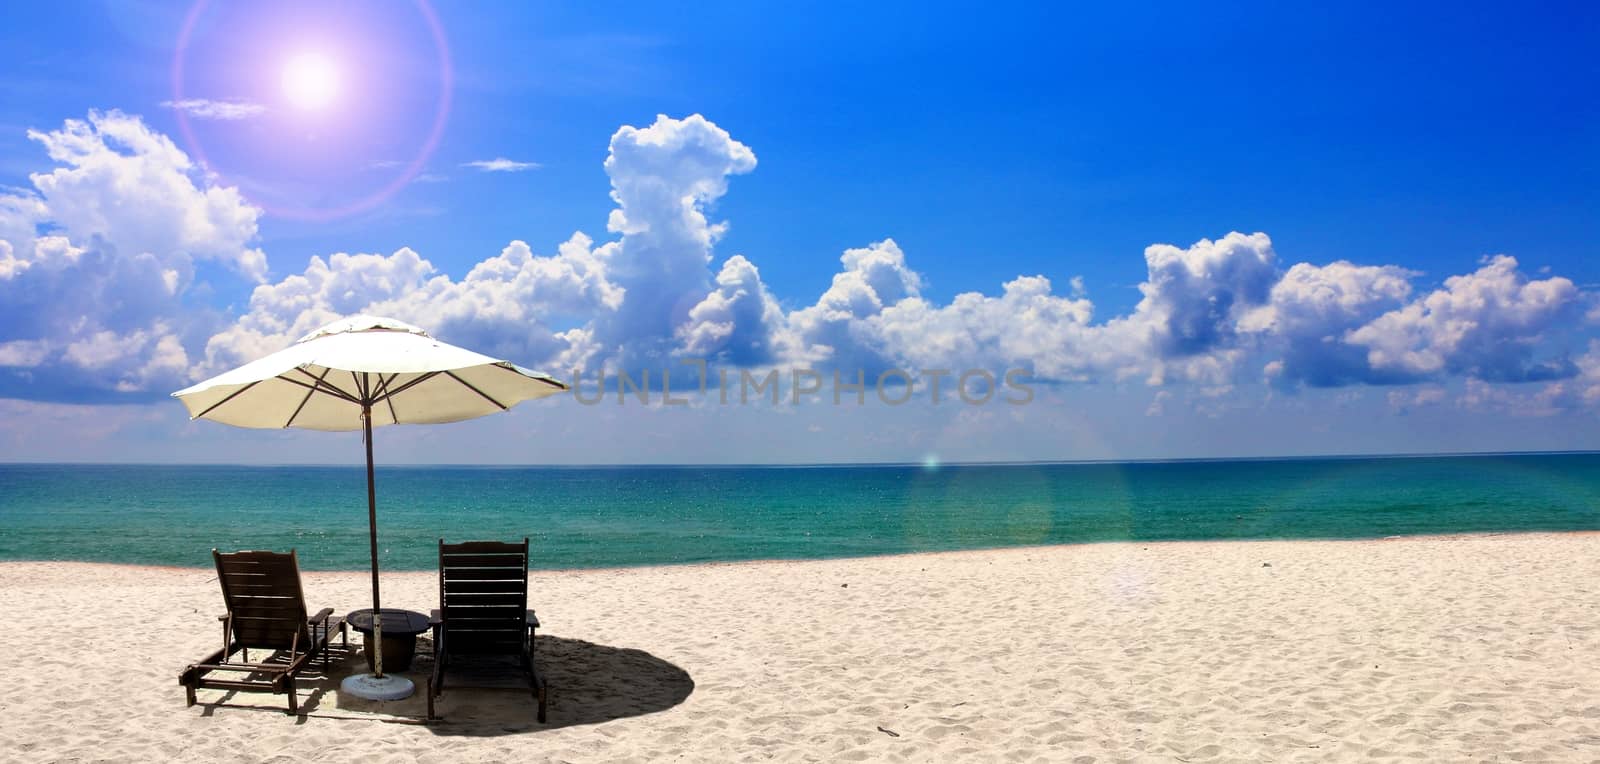 Beach chair and umbrella near the beach with blue sky